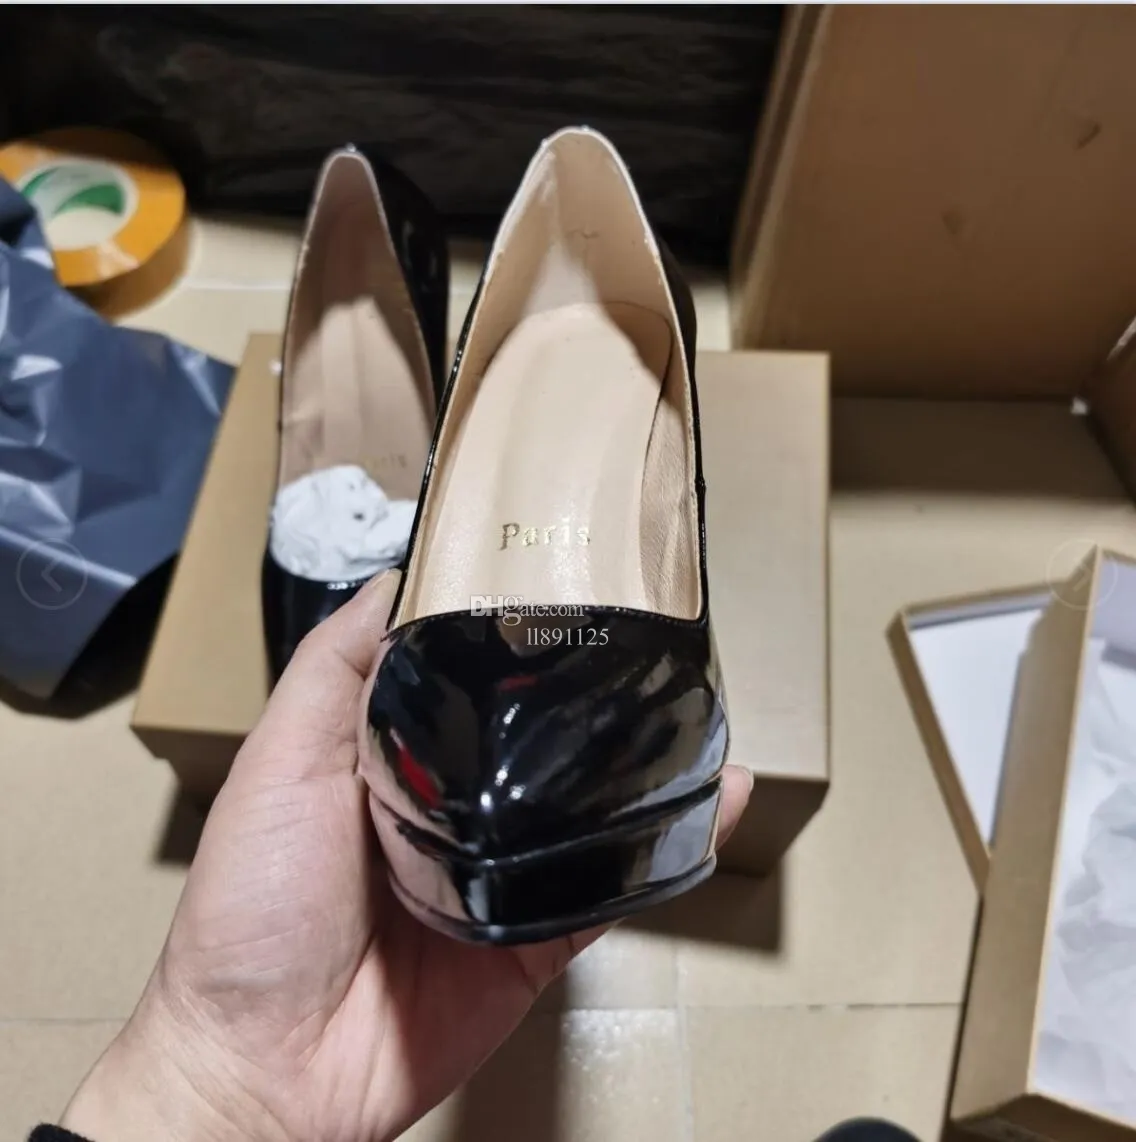 7a botas femininas de alta qualidade sapatos de salto alto mulheres de luxo designer de volta sandálias de couro envernizado apontou 6cm 8cm 10cm 12cm saltos bombas frete grátis 667789